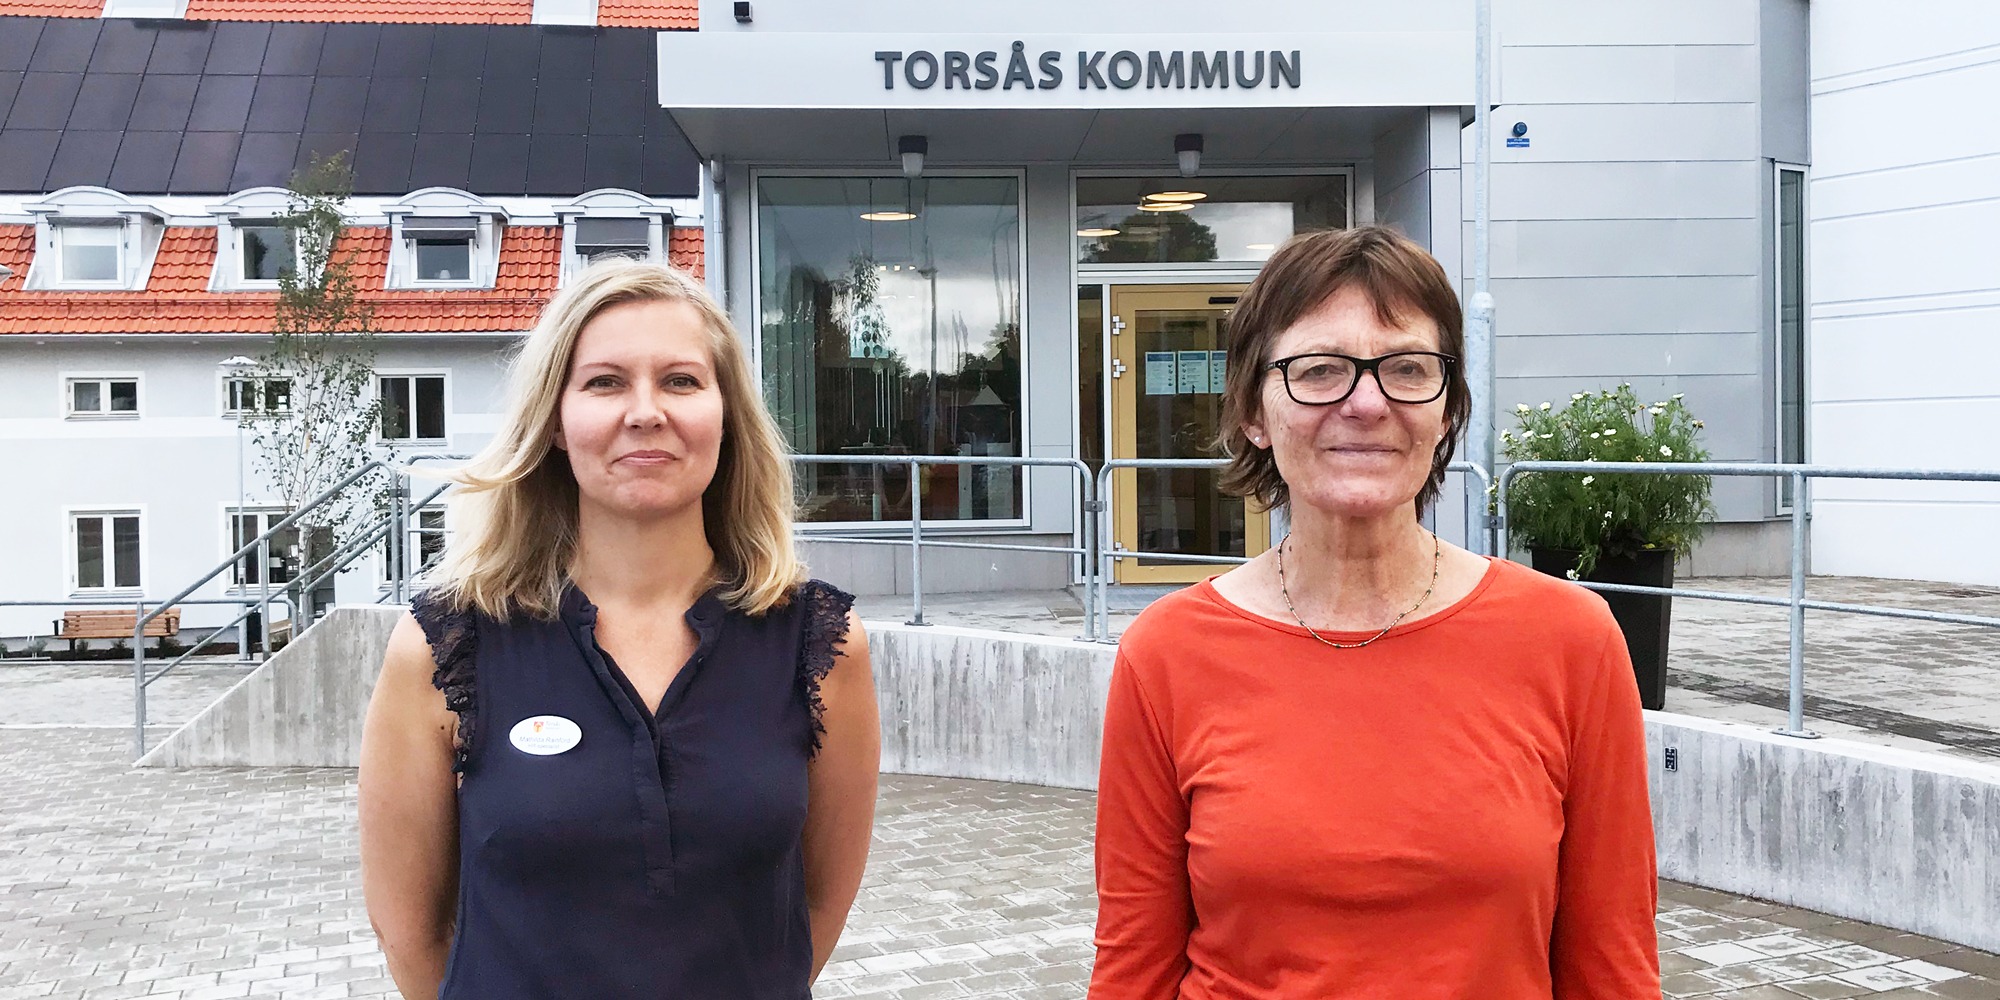 Mathilda Rainford, HR-specialist i Torsås, och Git Nilsson, rehabkoordinator vid hälsocentralen står framför kommunhuset i Torsås